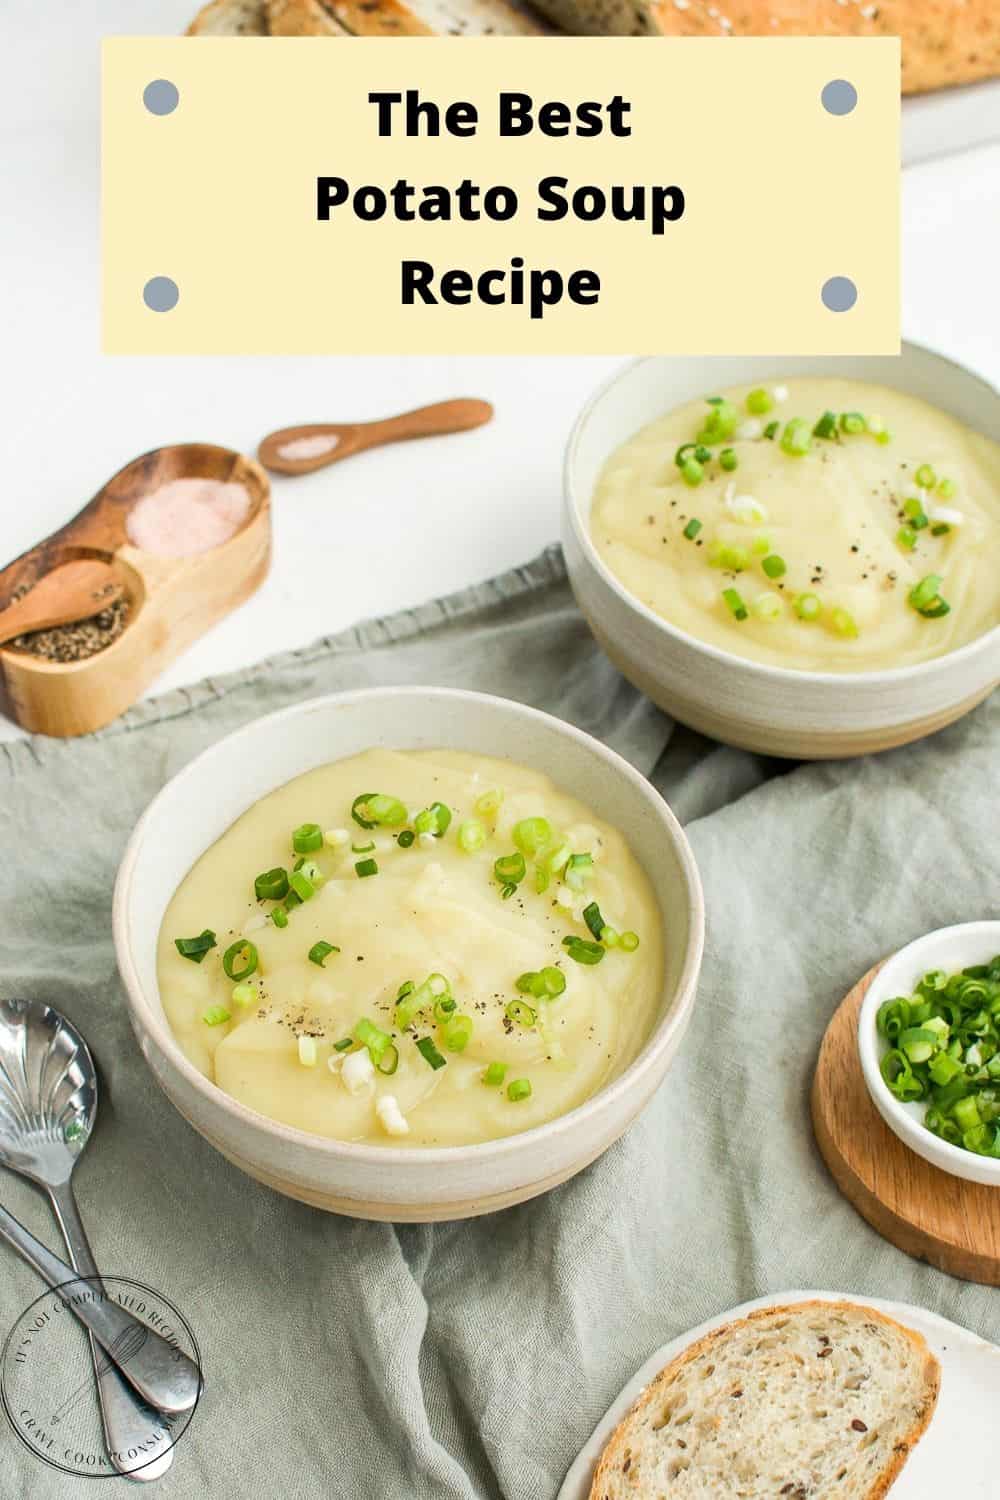 Potato Soup Recipe - It's Not Complicated Recipes